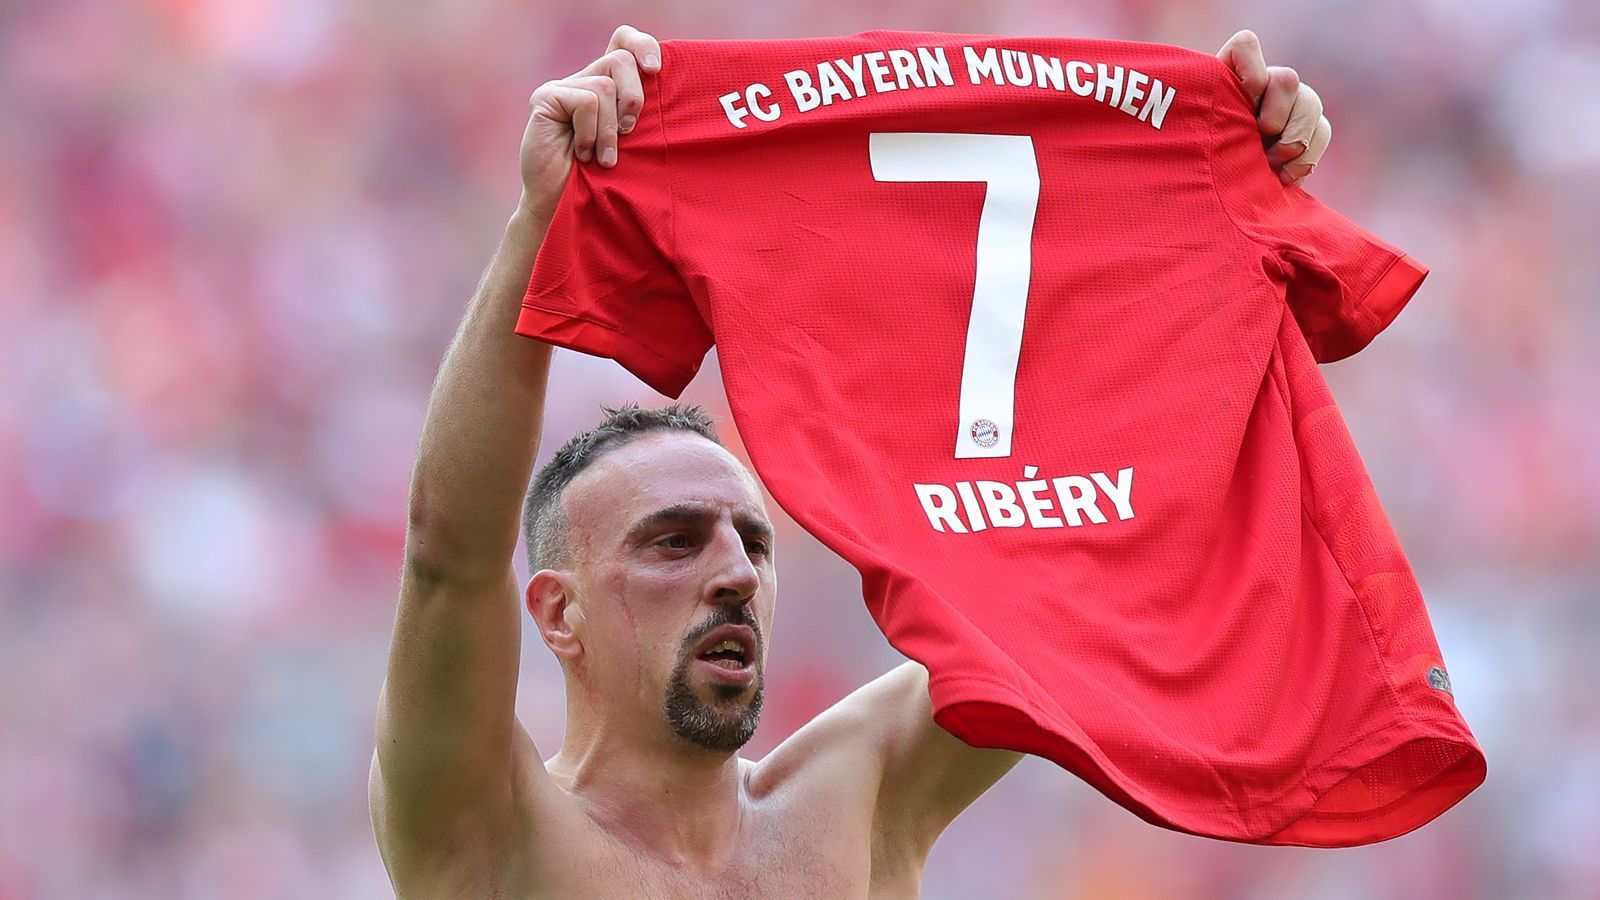 
                <strong>Linksaußen: Franck Ribery</strong><br>
                Franck Ribery kam im Sommer 2007 nach Deutschland. Und stellte die Bundesliga auf den Kopf. Mit einer zuvor nicht gekannten Finesse und Schlitzohrigkeit spielte sich der "Filou" sofort in die Herzen der Bayern-Fans. Und diesen Platz wird er immer behalten. Als er im vergangenen Mai nach zwölf Jahren, 425 Spielen, 124 Toren, 182 Vorlagen und 24 Titeln unter Tränen "Au revoir", "Servus" und "Mia san mia" sagte, schallte es "Oh, Franck Ribery" durch die Allianz Arena. Minutenlang. Einer der Besten, die der FC Bayern jemals hatte. Und jemals haben wird.
              